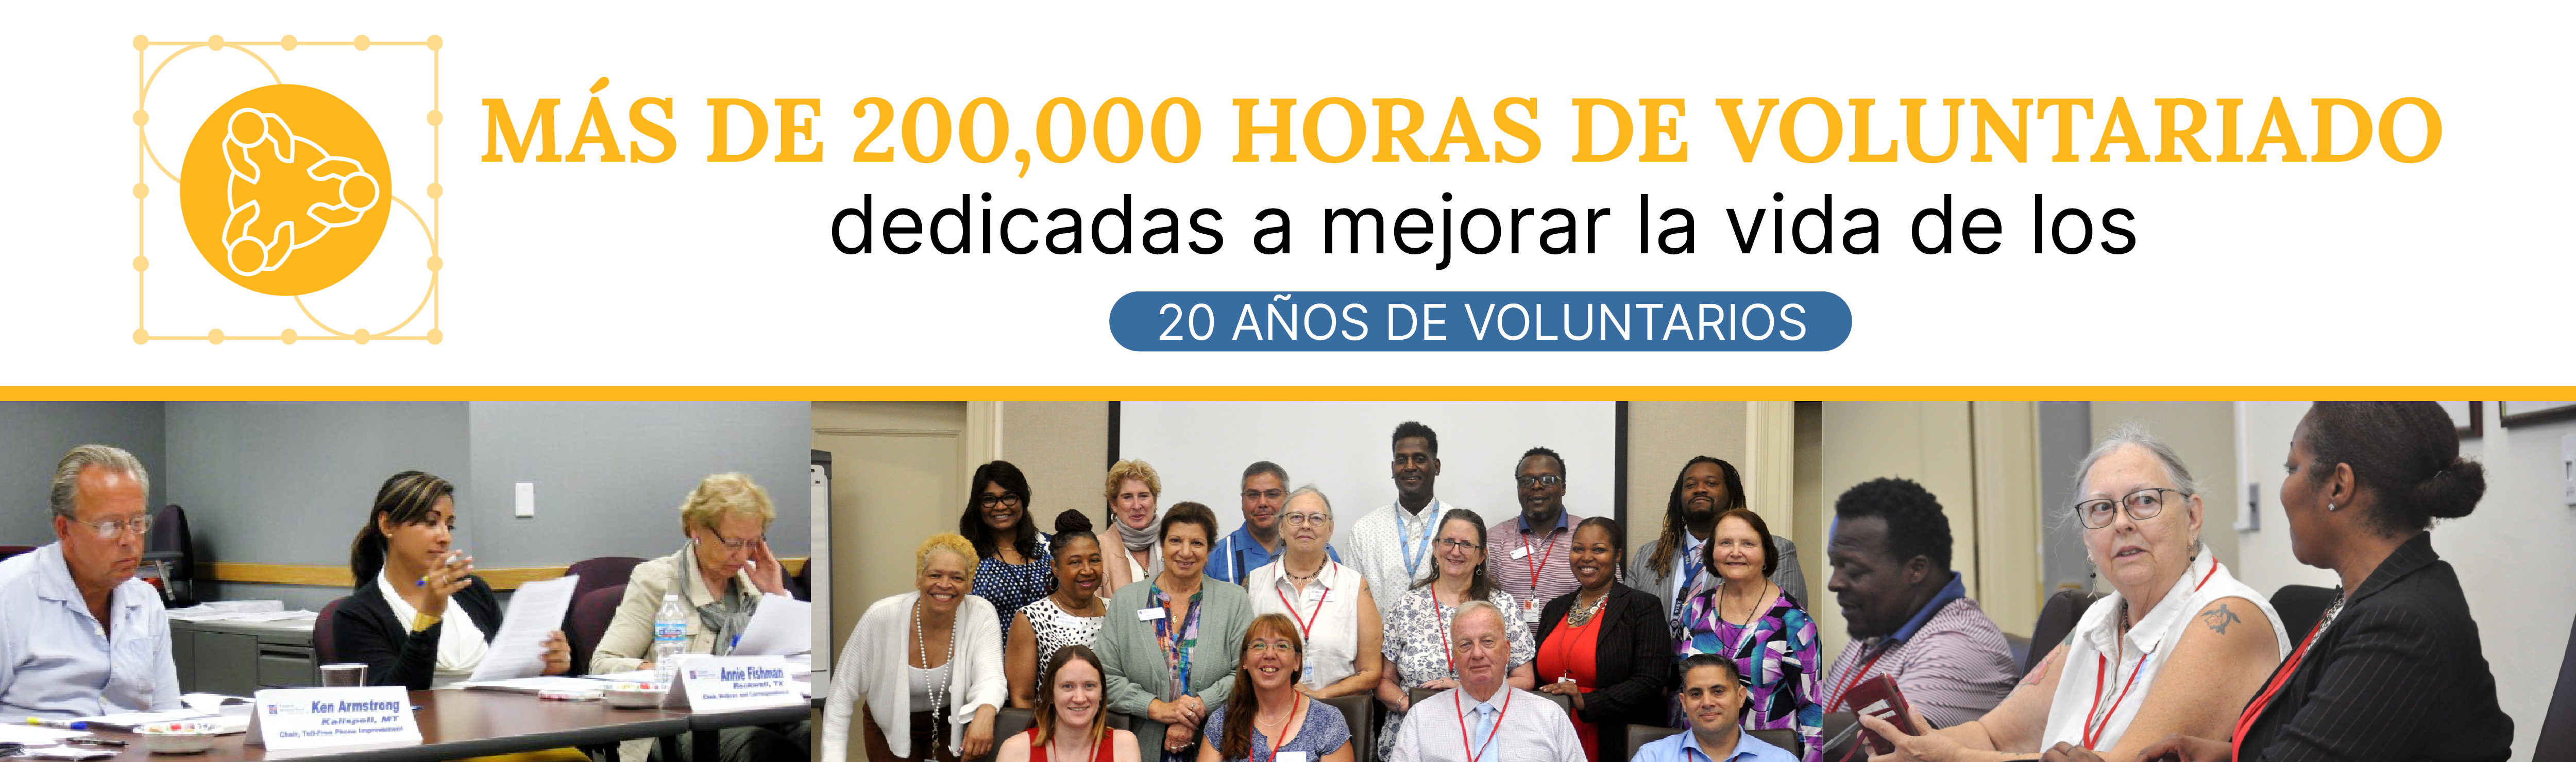 100,000 horas de voluntariado dedicadas a mejorar la vida de los contribuyentes